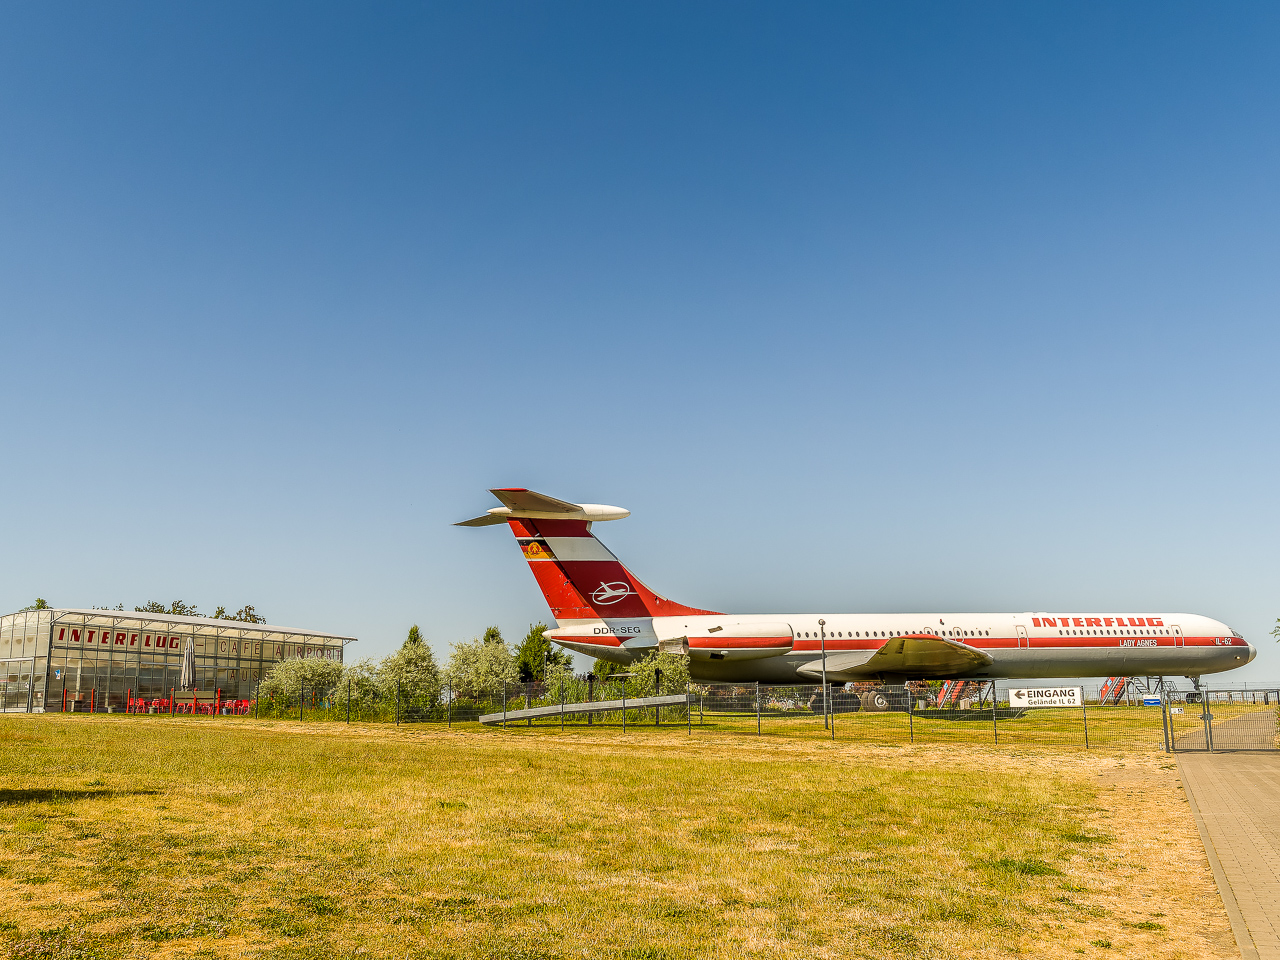 Eine PassagierFlugMaschine, rot und weiß, mit Kennung "Interflug" steht eingezäunt auf einer Wiese, daneben ein gläserner Pavillon mit Aufschrift "Interflug Café Airport"